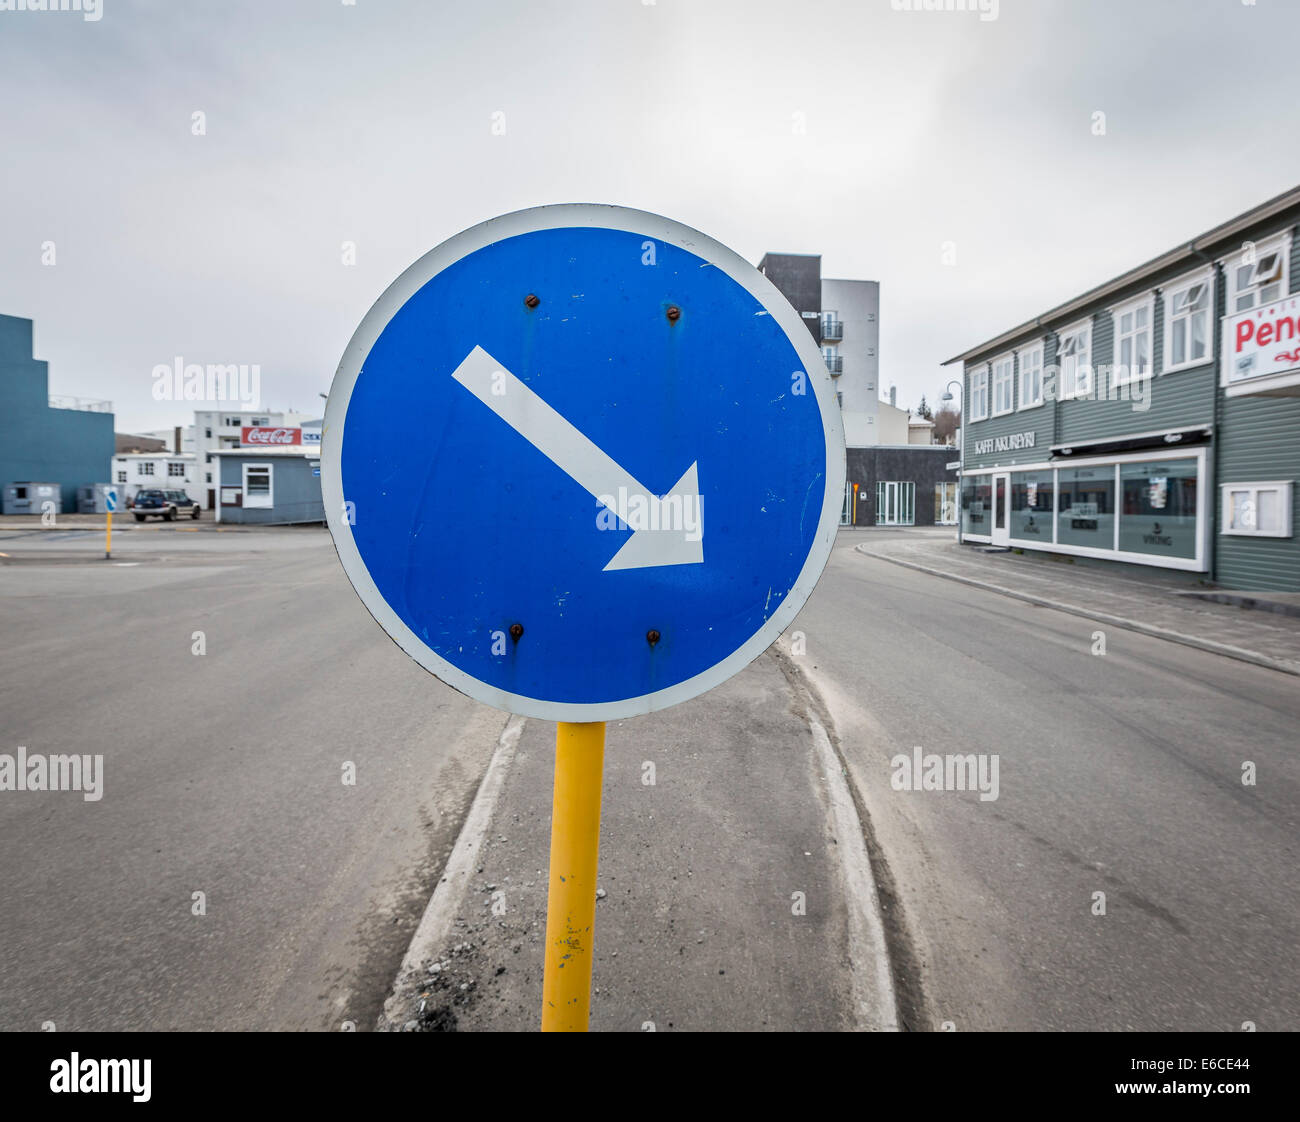 Directional traffic sign, Akureyri, Iceland Stock Photo